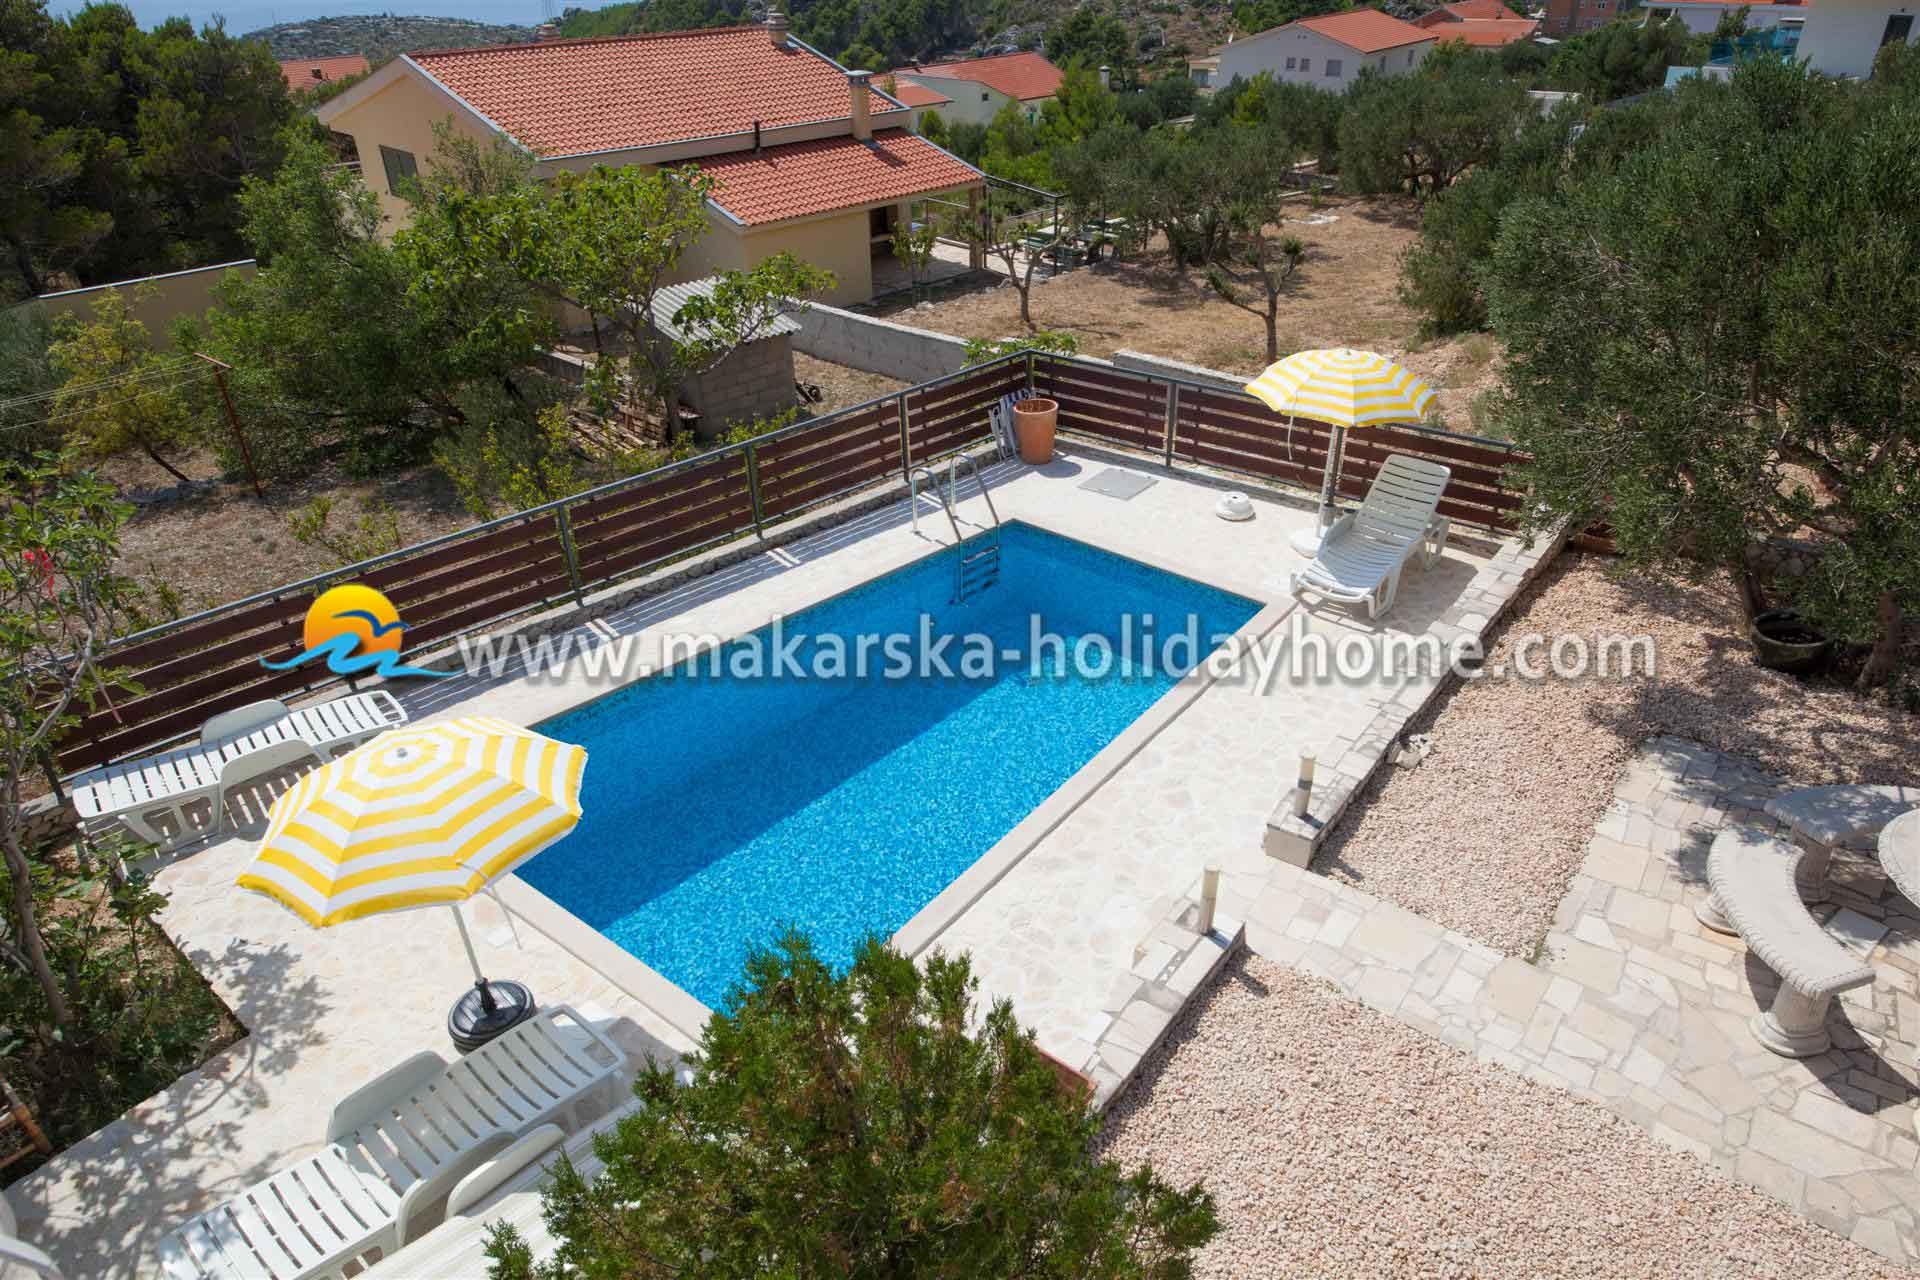 Holiday villa with Pool in Makarska - Villa Leon / 10